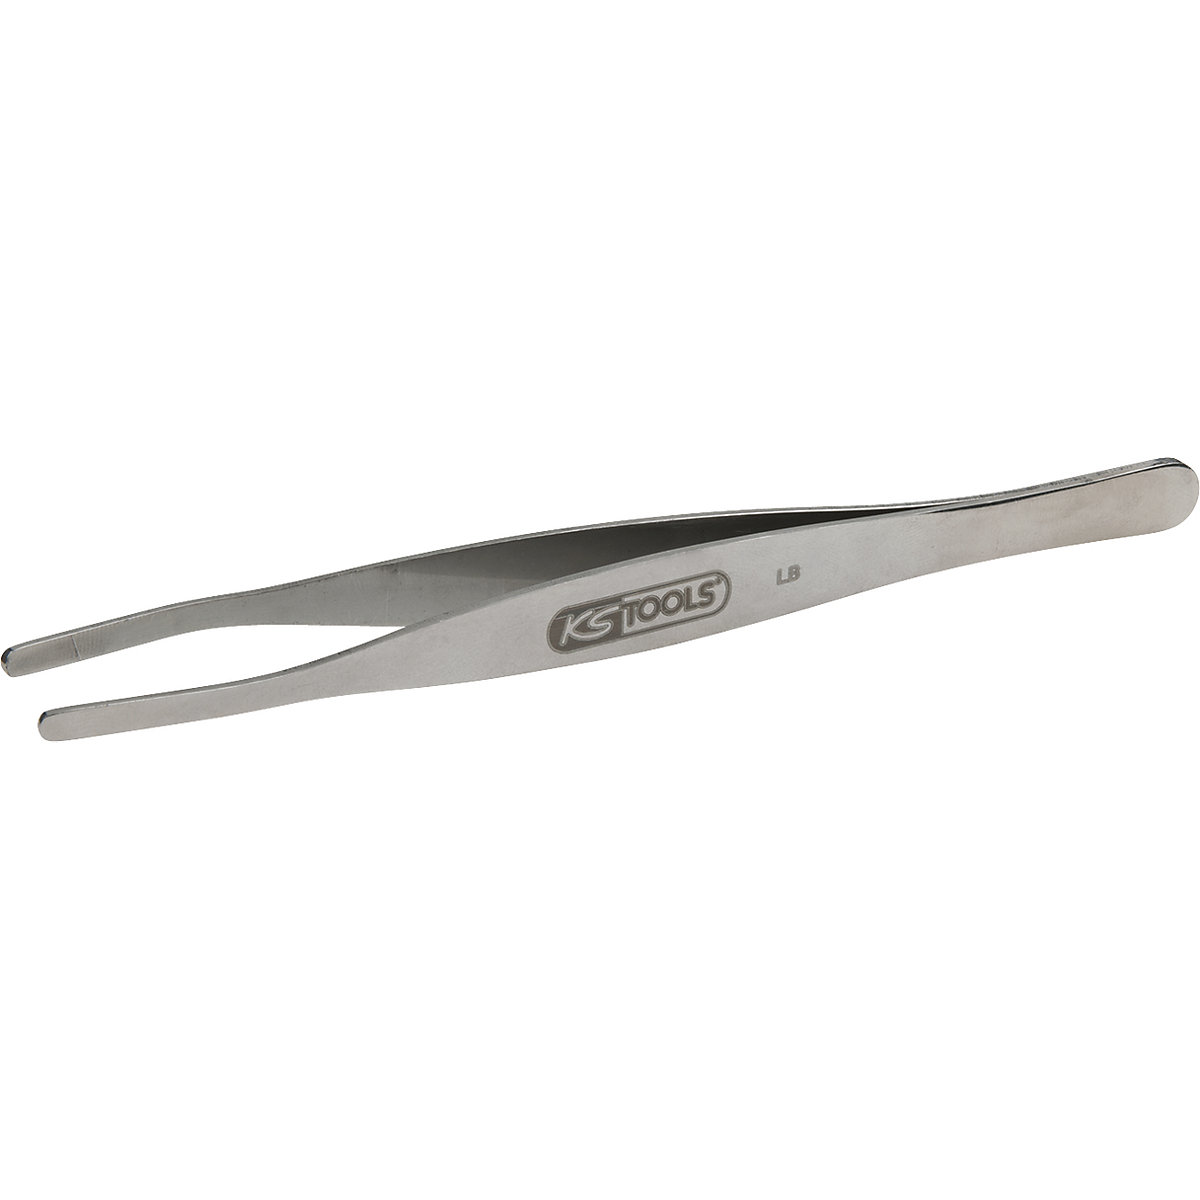 Stainless steel tweezers - KS Tools